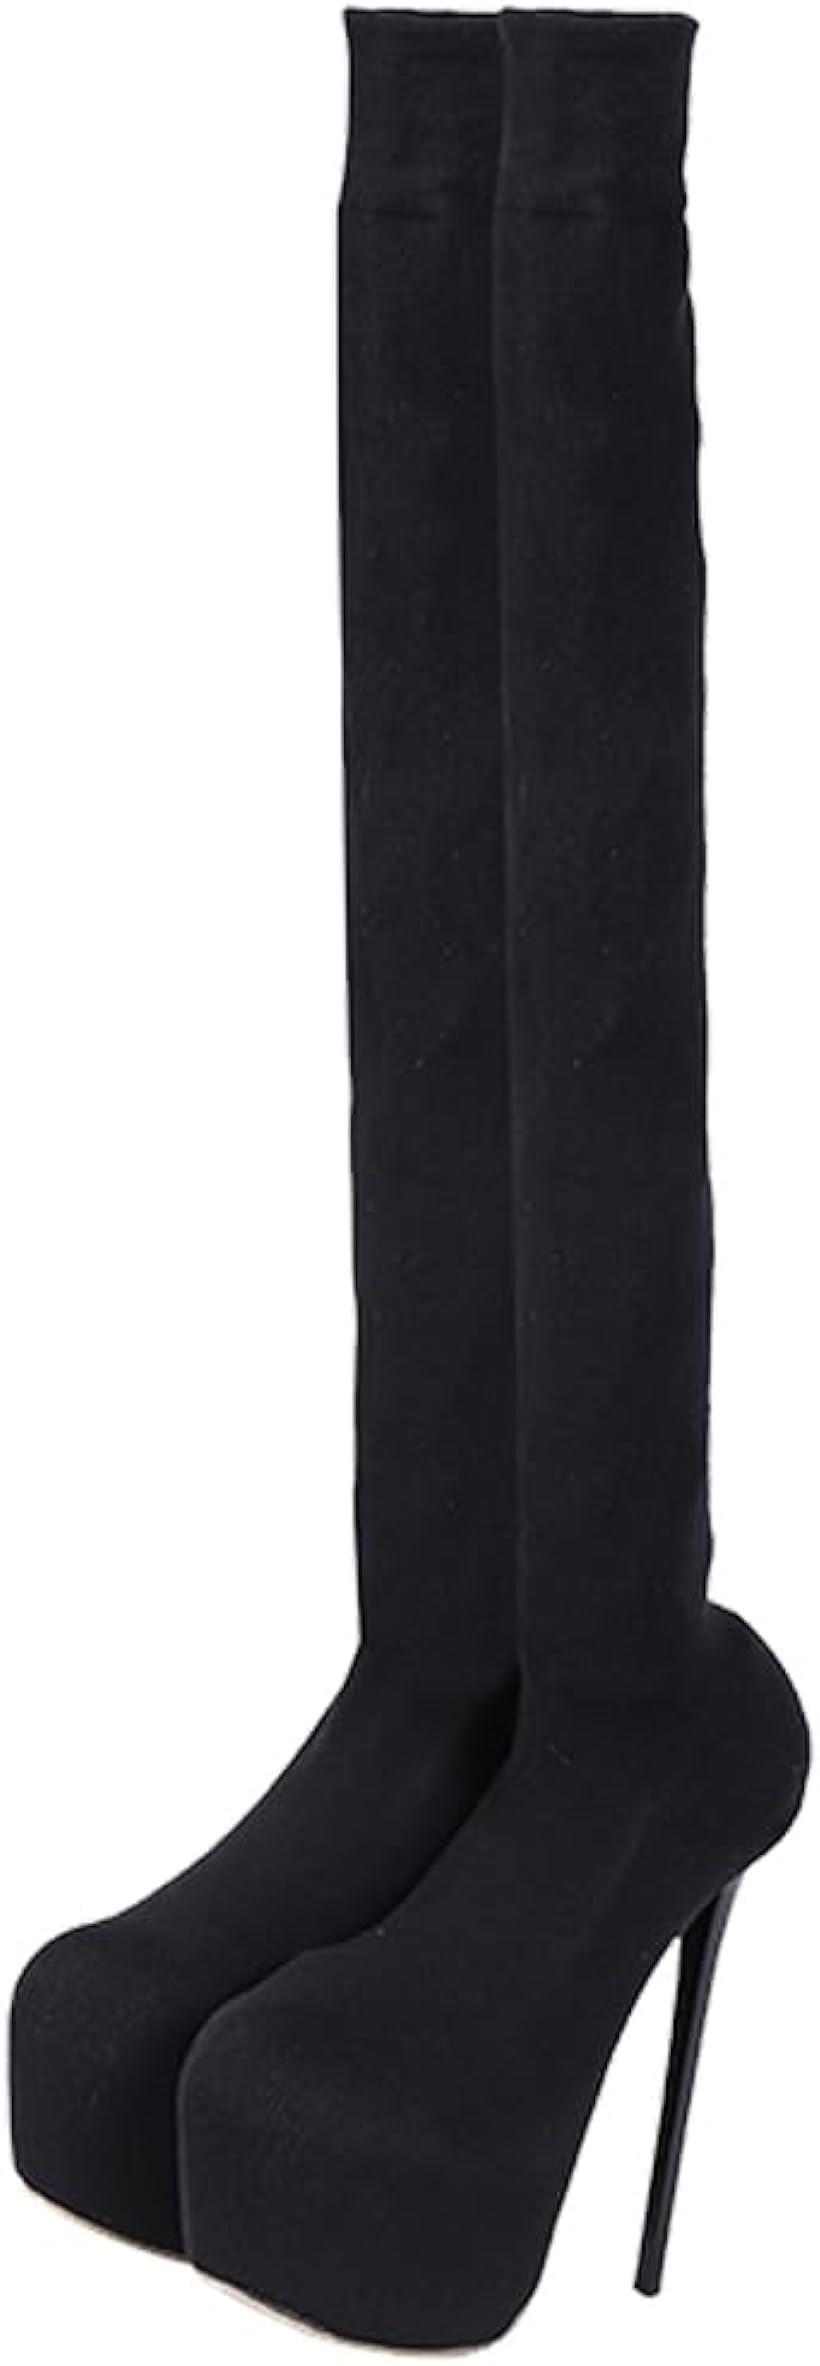 ニーハイブーツ レディース ロングブーツ ピンヒール 15cm 膝上 柔らかい ストレッチロングブーツ 可愛い 暖かい 36( ブラック, 23.0 cm)